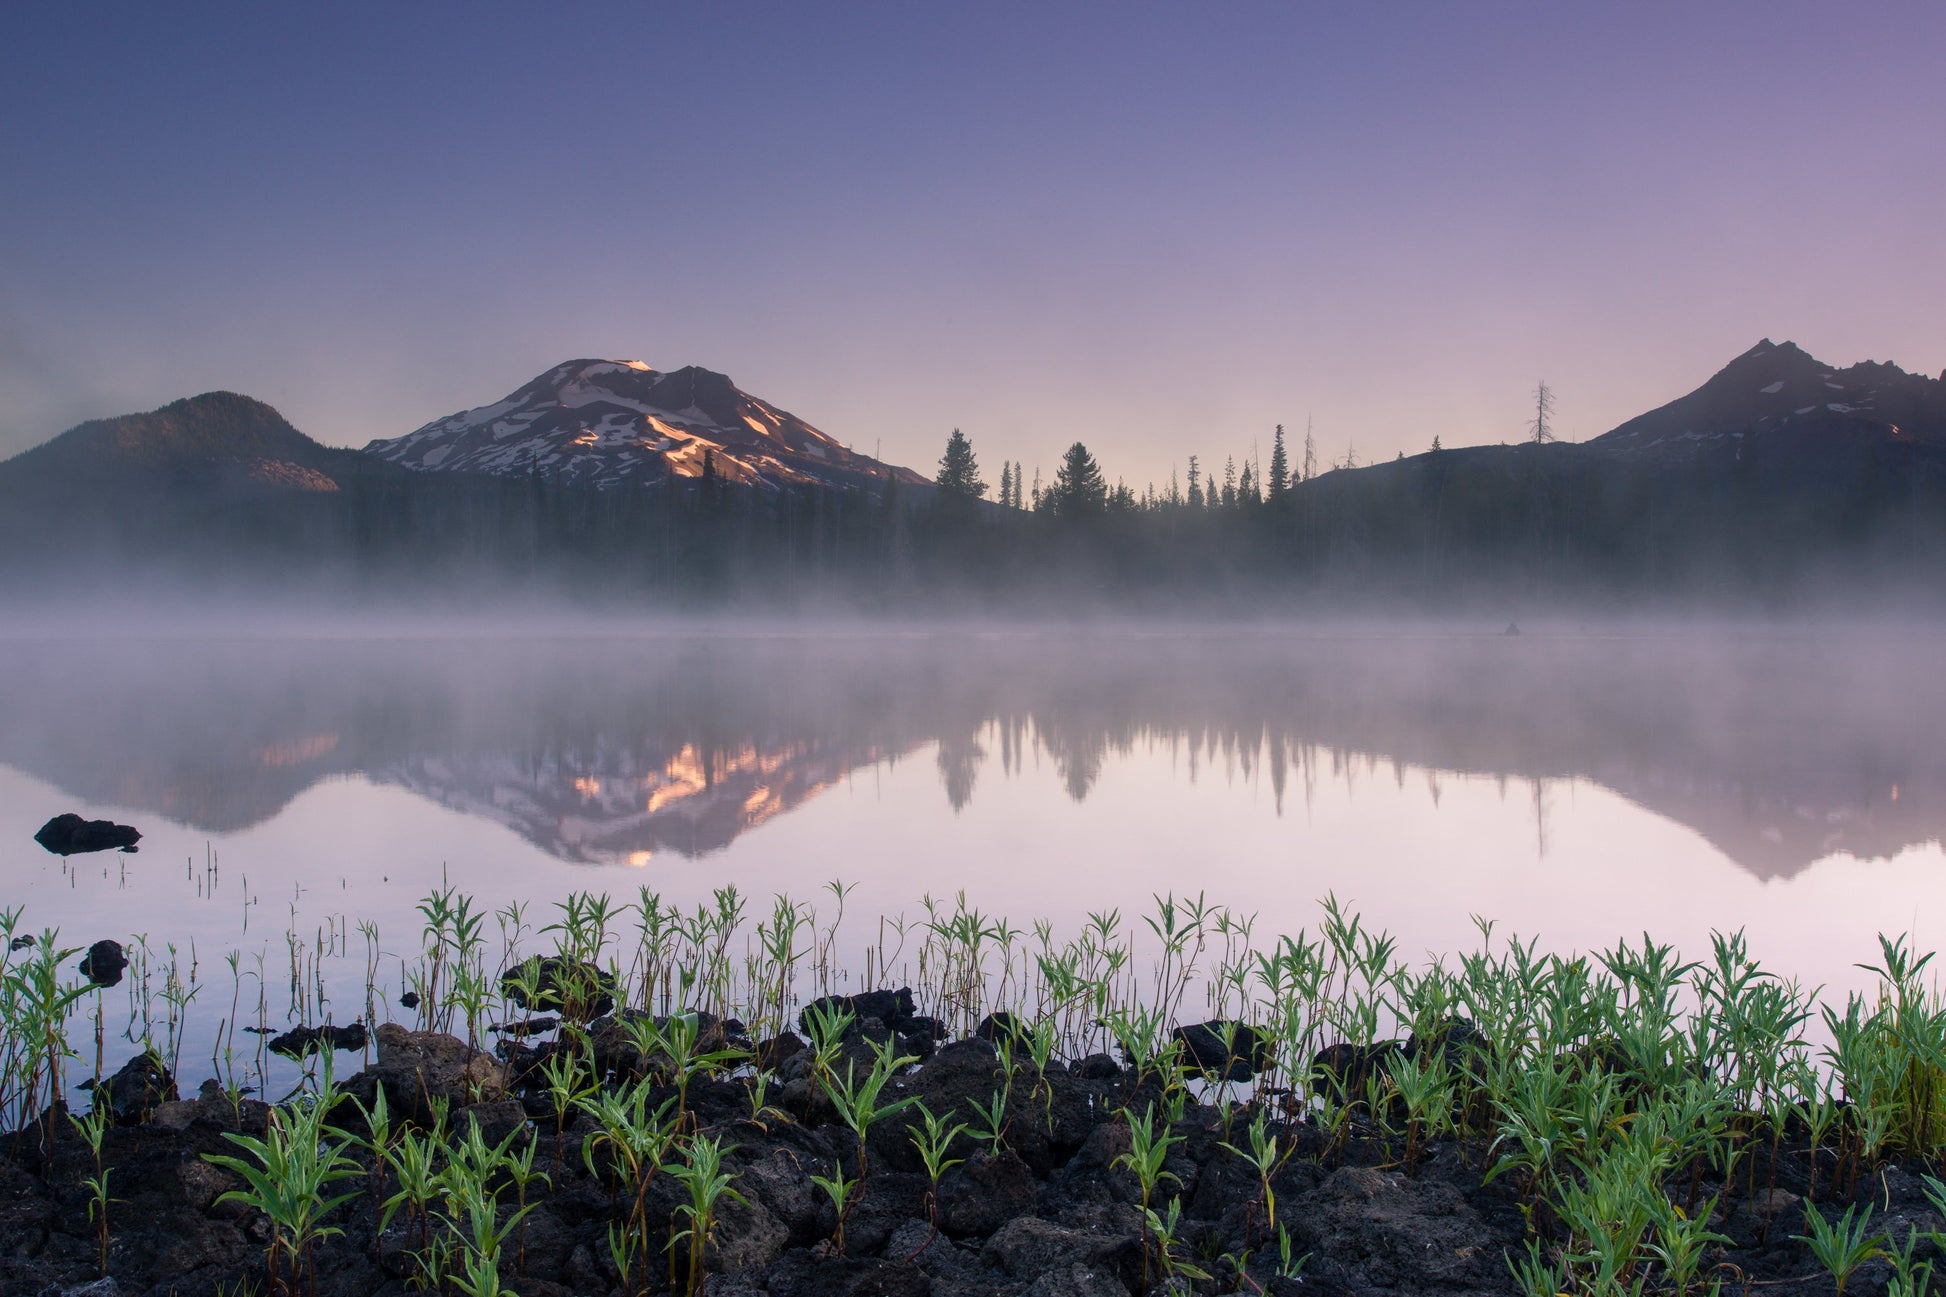 Morning mist on Sparks Lake near Bend, Oregon